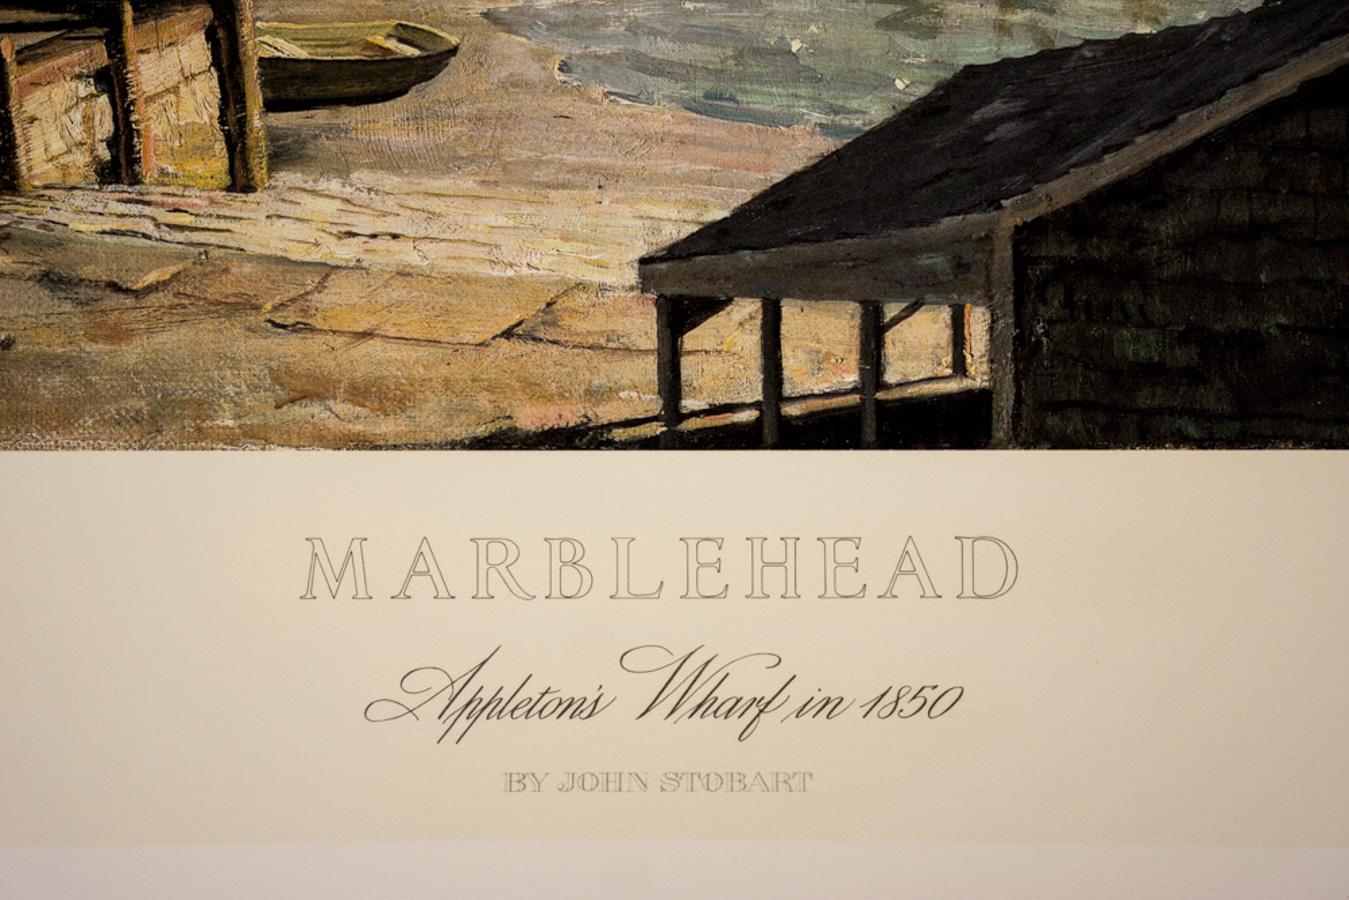 Tirage à tirage limité signé d'après une peinture de John Stobart (né en 1929).
Né et élevé en Angleterre, John Stobart a émigré aux États-Unis dans les années 1960 et s'est intéressé à l'histoire maritime de l'Amérique. Sa première exposition de